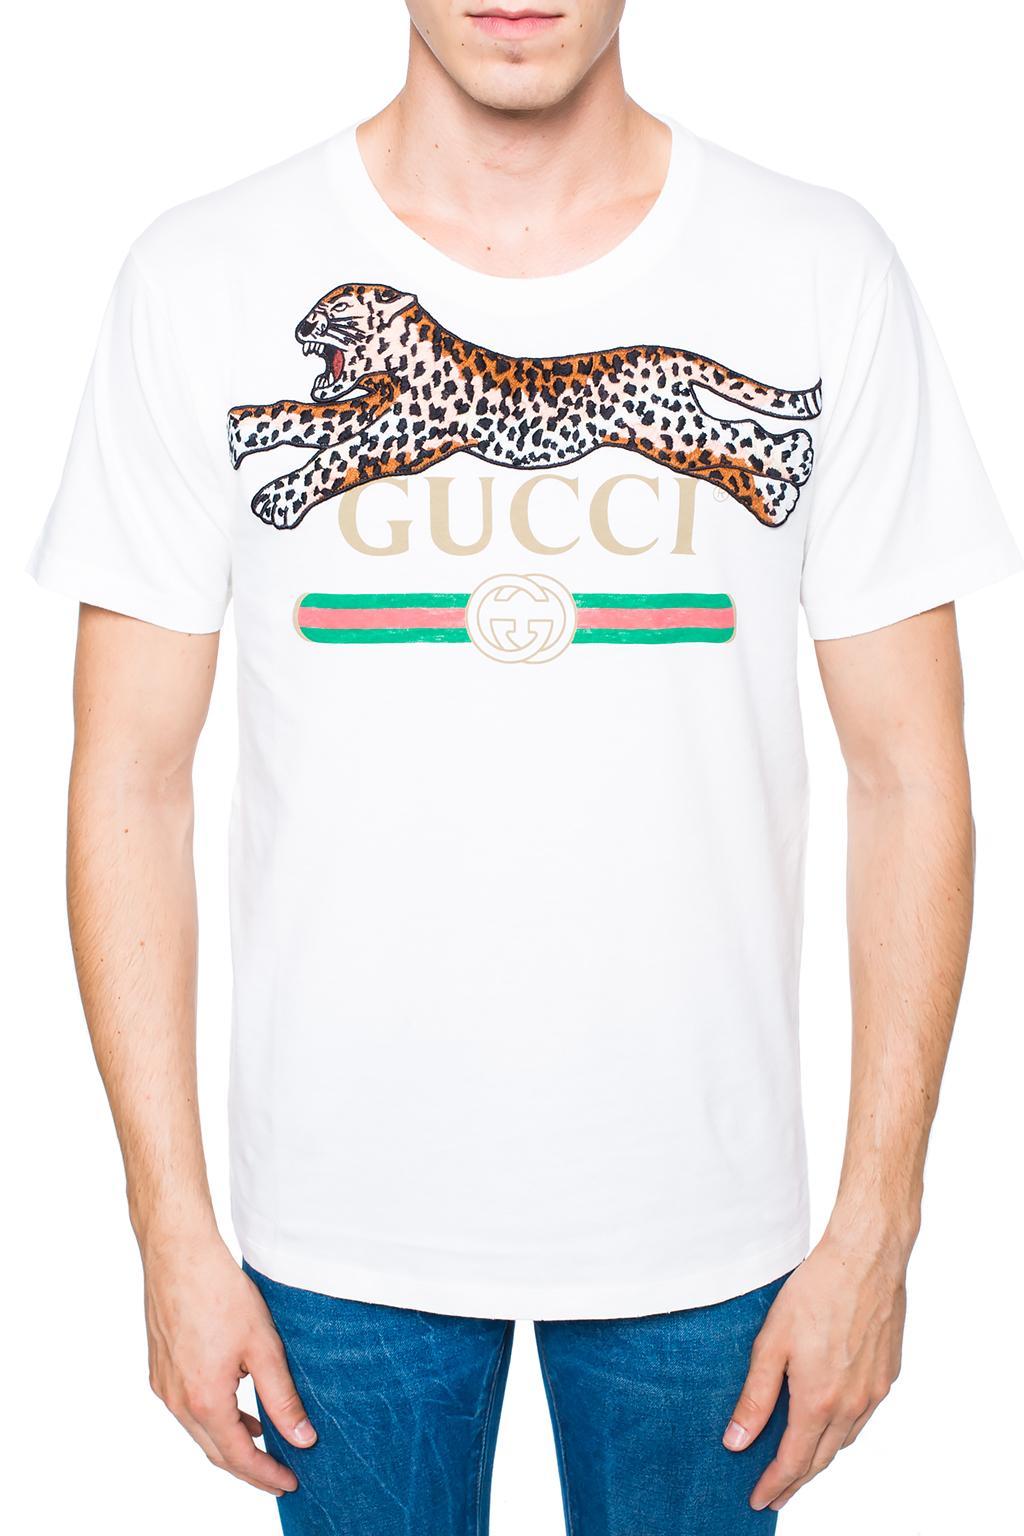 Gucci Cotton Leopard-appliqué T-shirt in White for Men - Lyst